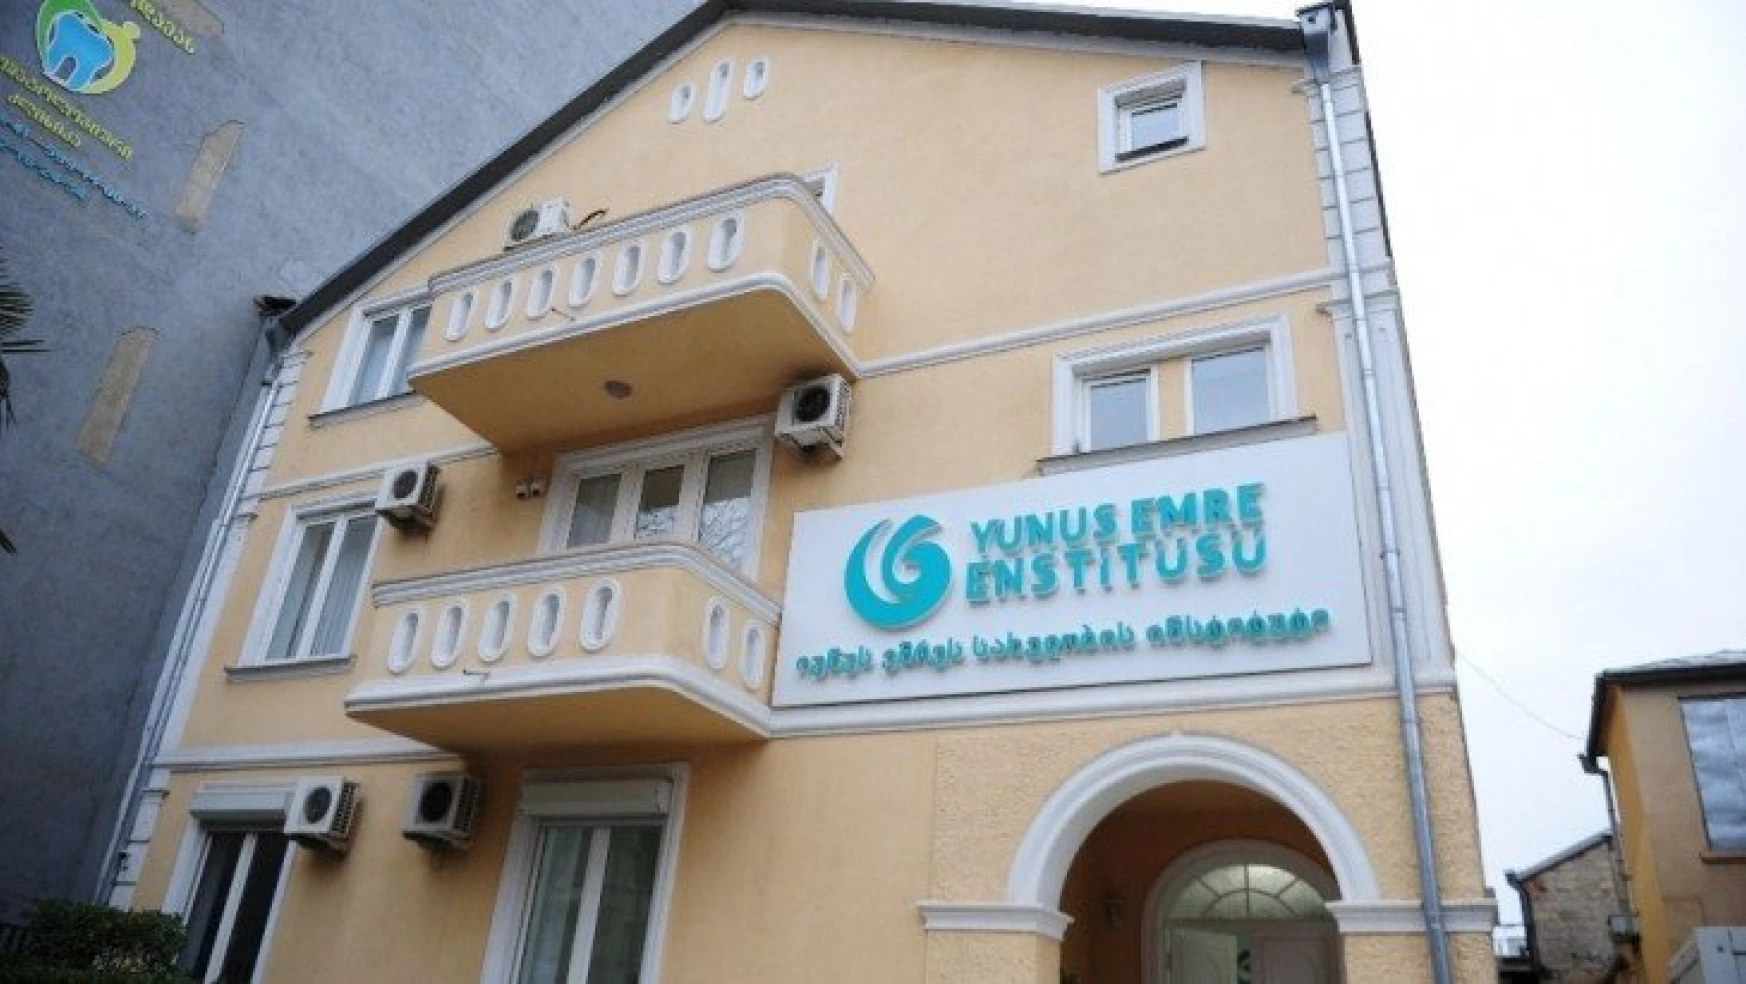 Yunus Emre Enstitüsü, Gürcistan'da Türkçe ve Türk kültürünü öğretiyor